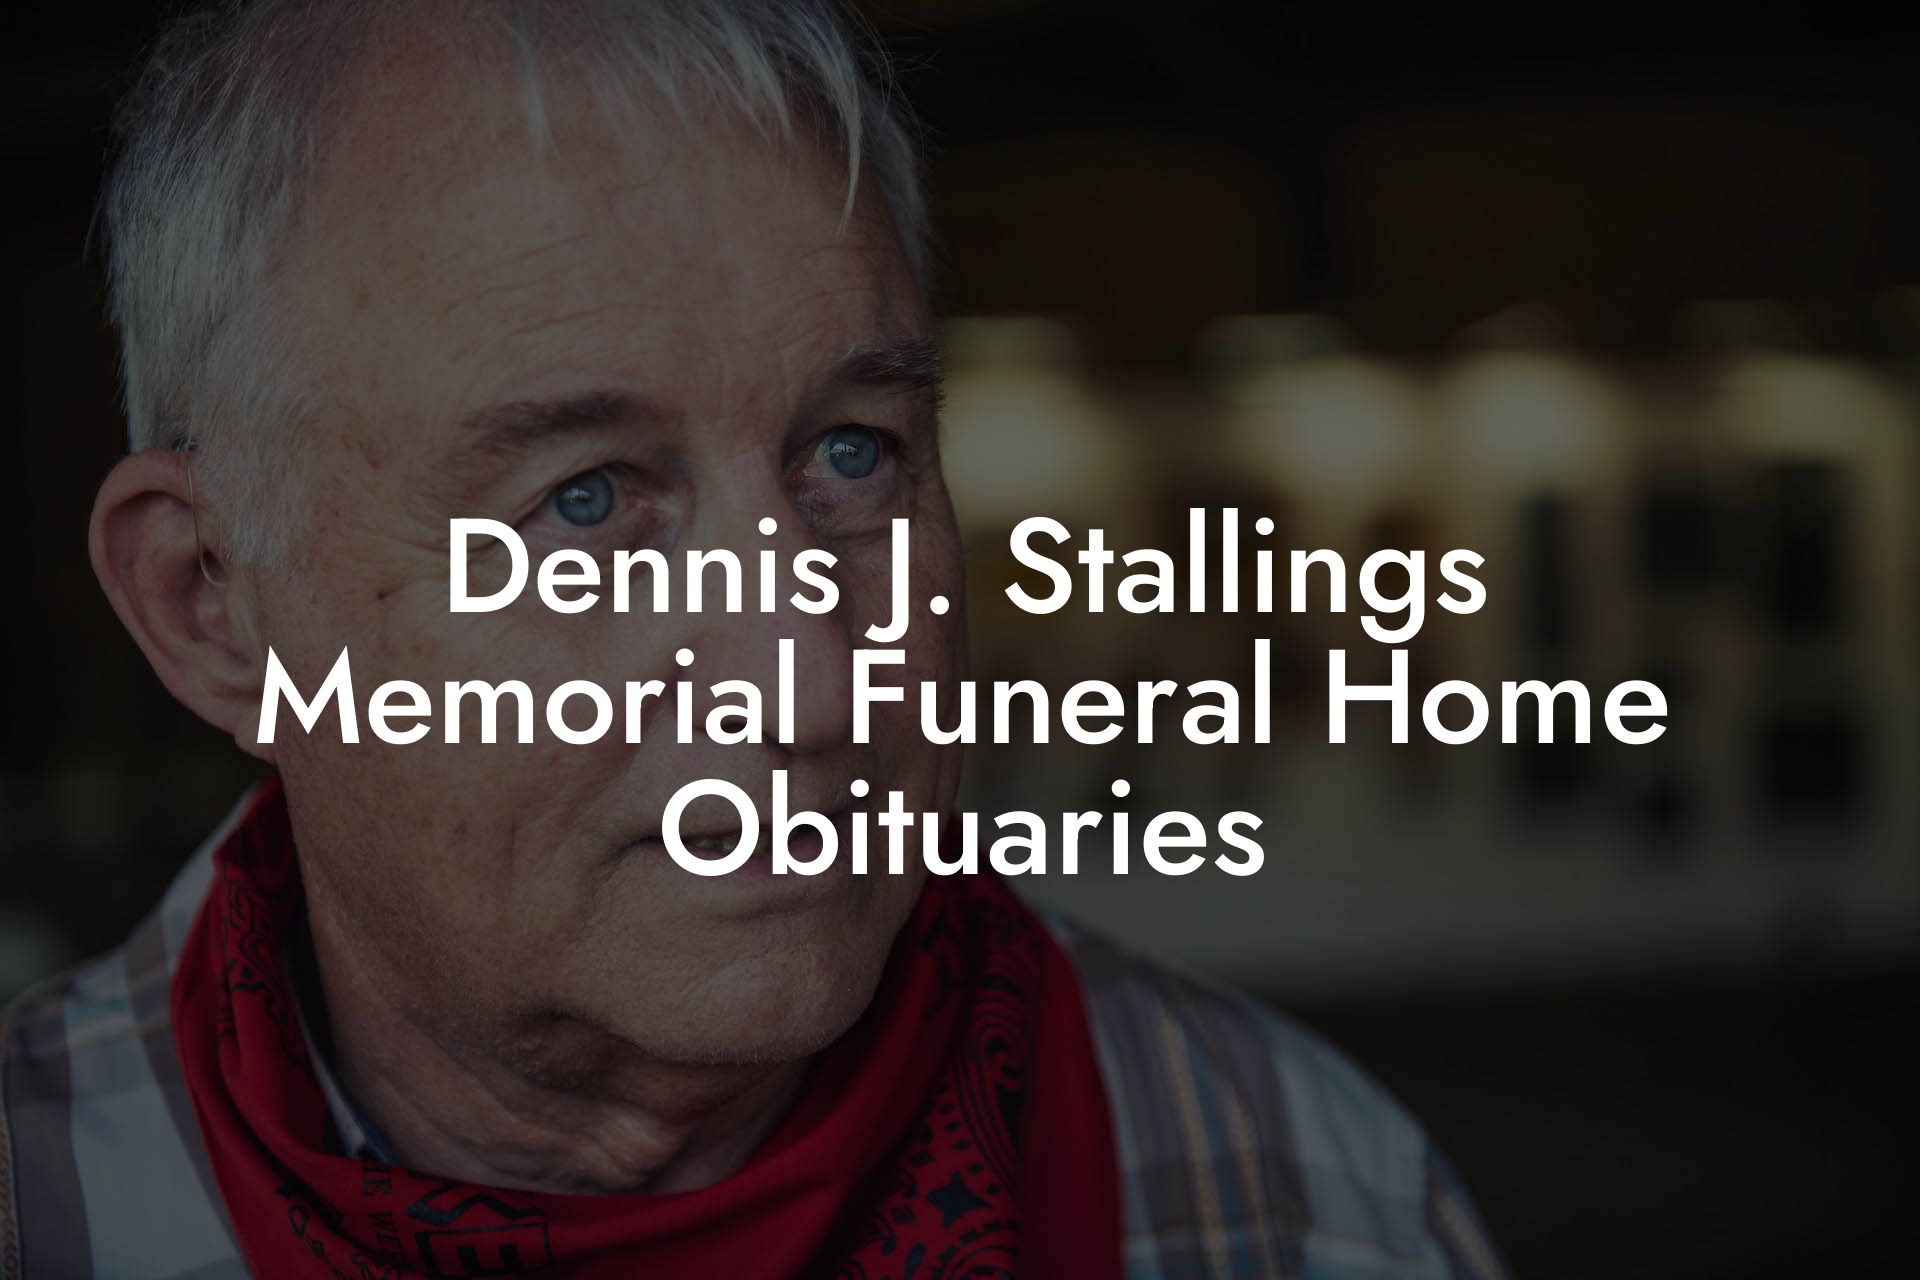 Dennis J. Stallings Memorial Funeral Home Obituaries